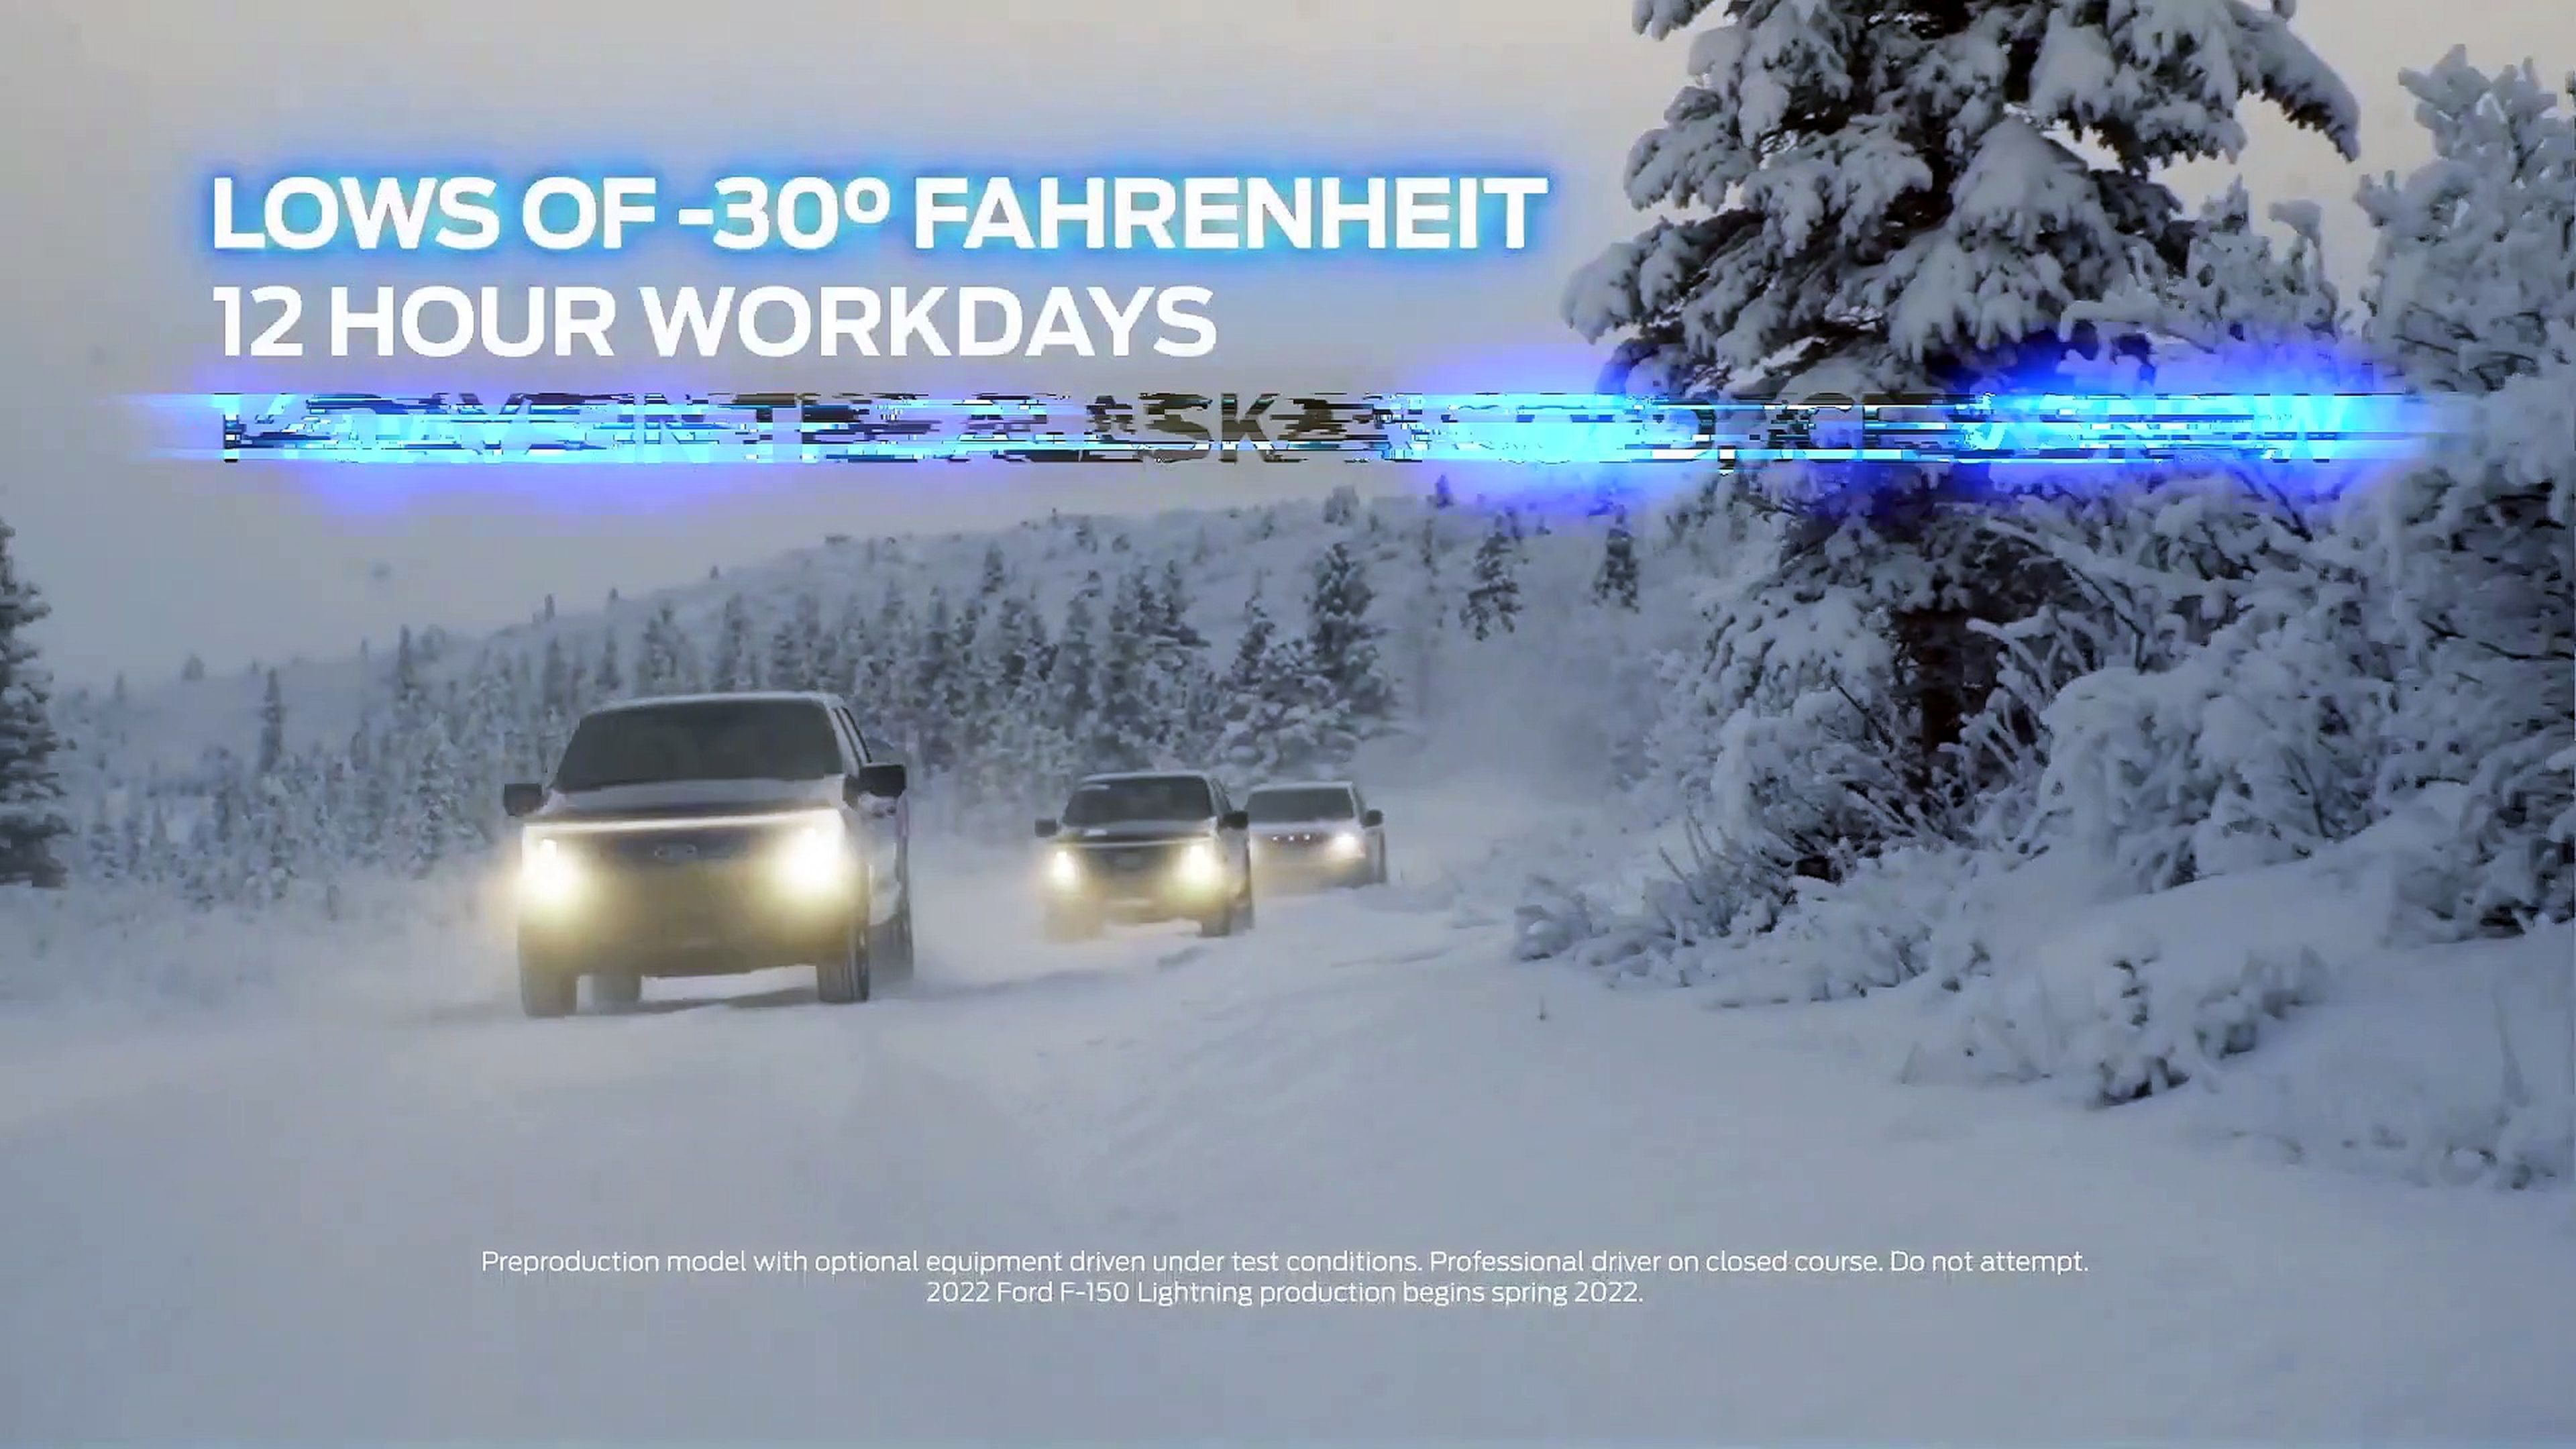 VÍDEO: Así se lleva al límite en hielo a una bestia como el Ford F-150 Lightning